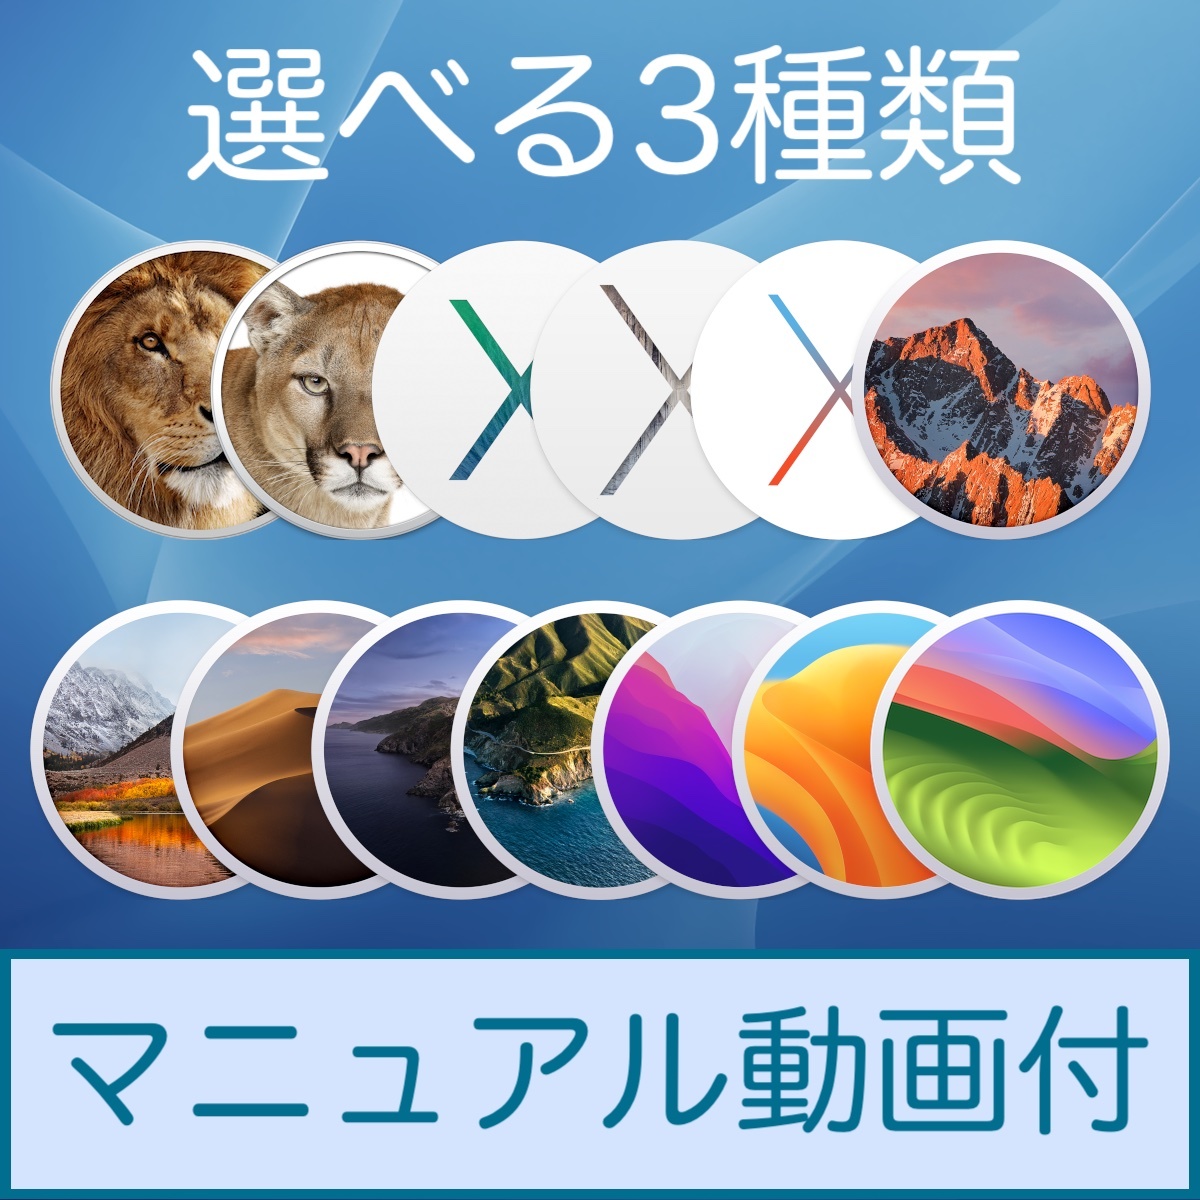 Mac OS 選べる3種類【 Lion 10.7.5 〜 Sonoma 14.0 】ダウンロード納品 / マニュアル動画ありの画像1